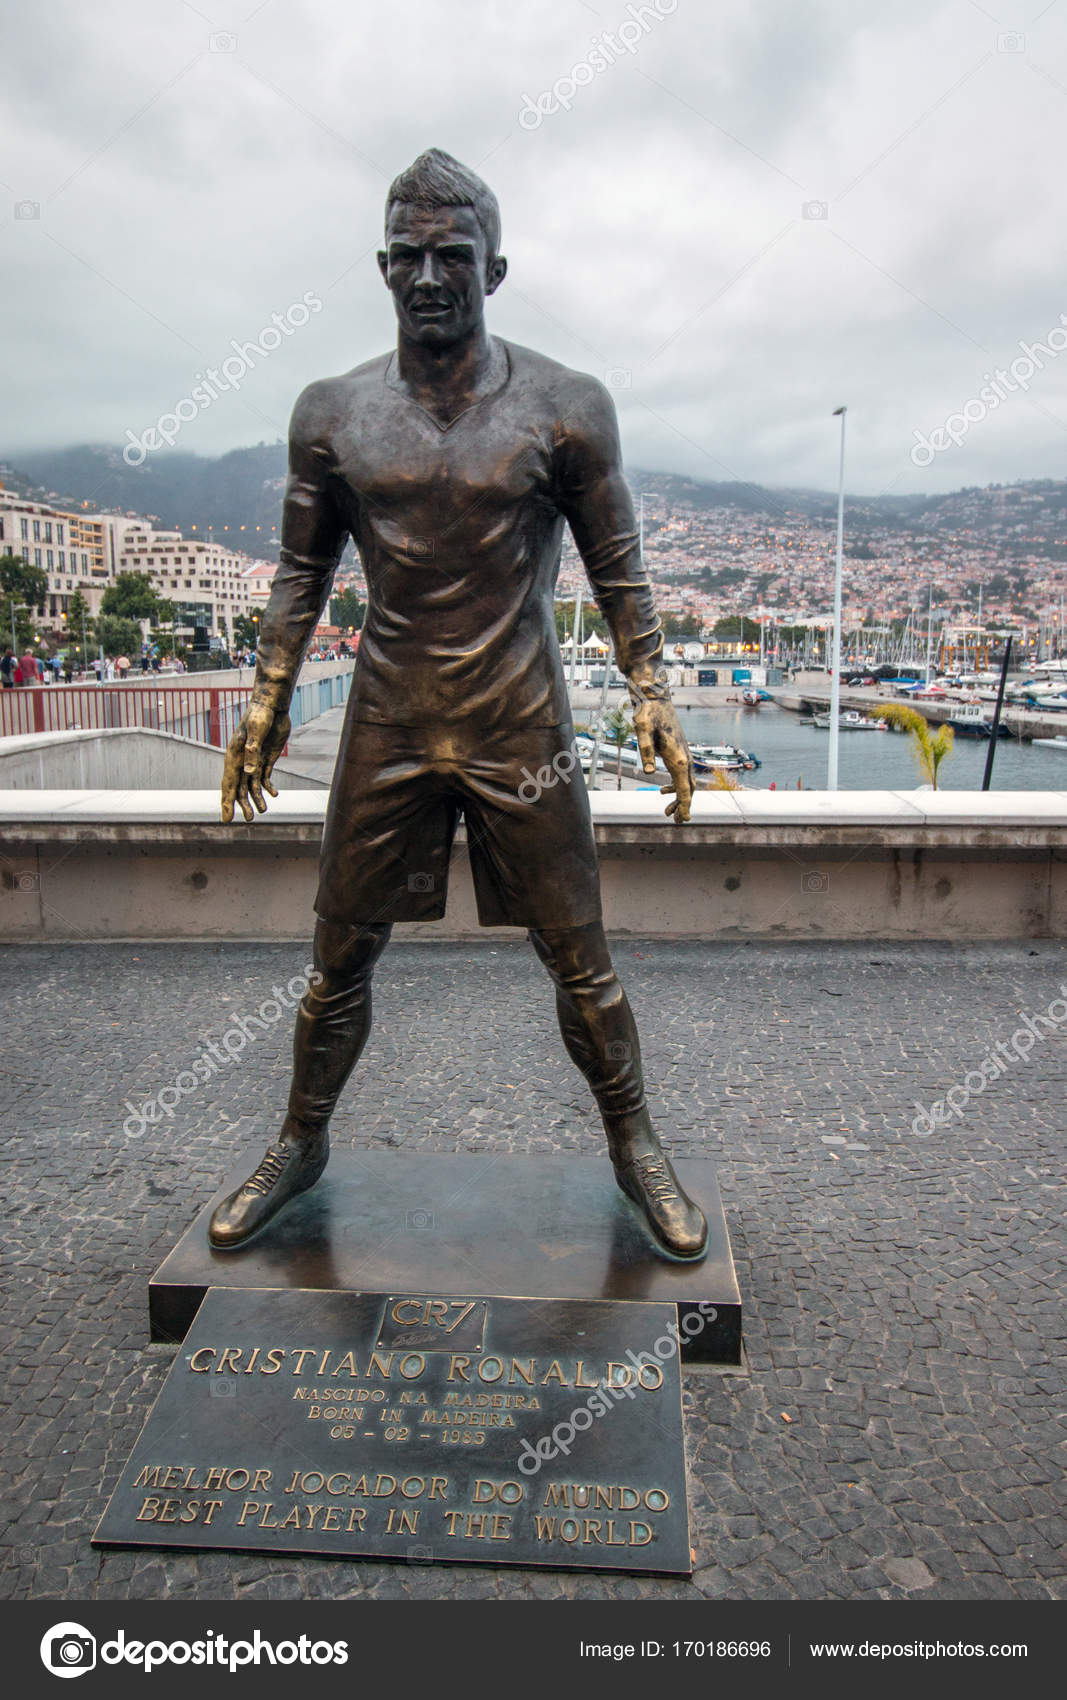 Statue von Cristiano Ronaldo — Redaktionelles Stockfoto © membio #170186696